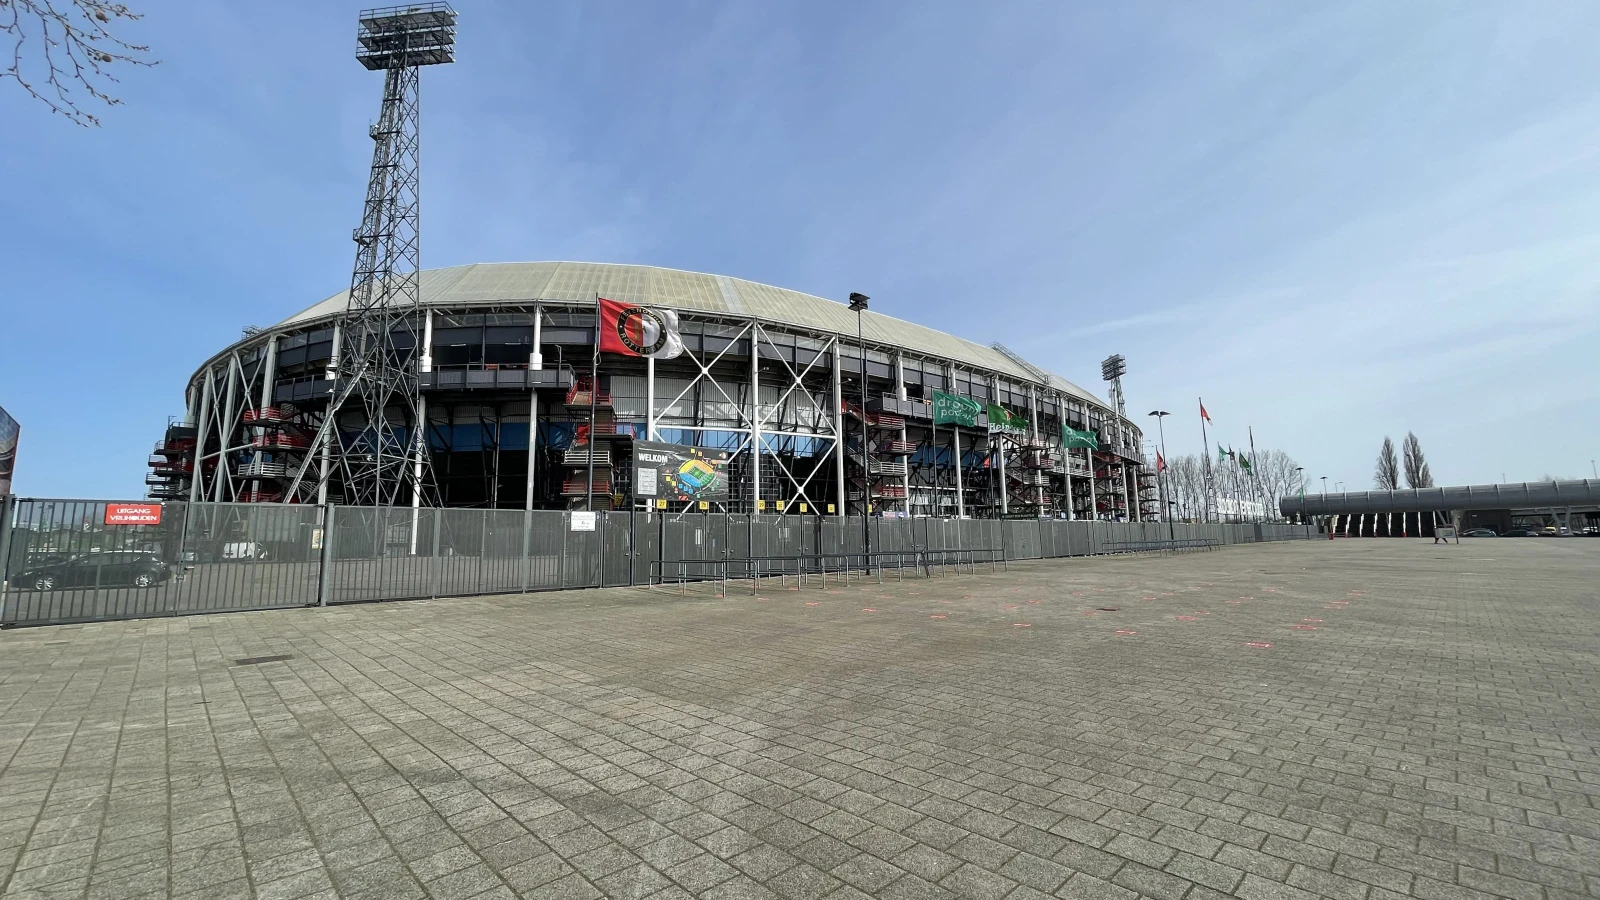 Thuiswedstrijden tegen FC Volendam en RKC Waalwijk ook uitverkocht